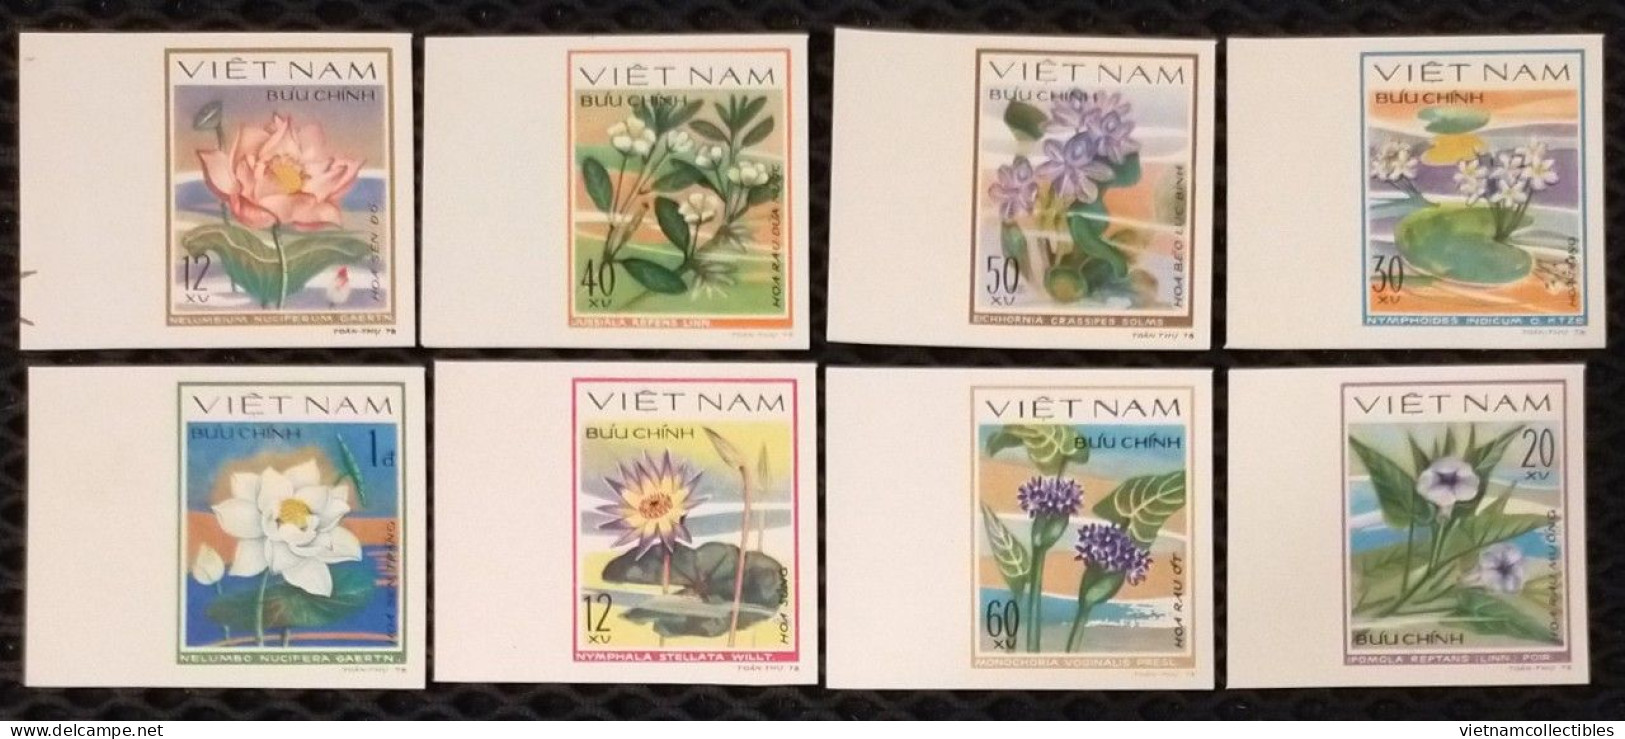 Vietnam Viet Nam MNH Imperf Stamps 1980 : Aquatic Flowers / Lotus / Flower (Ms359) - Vietnam